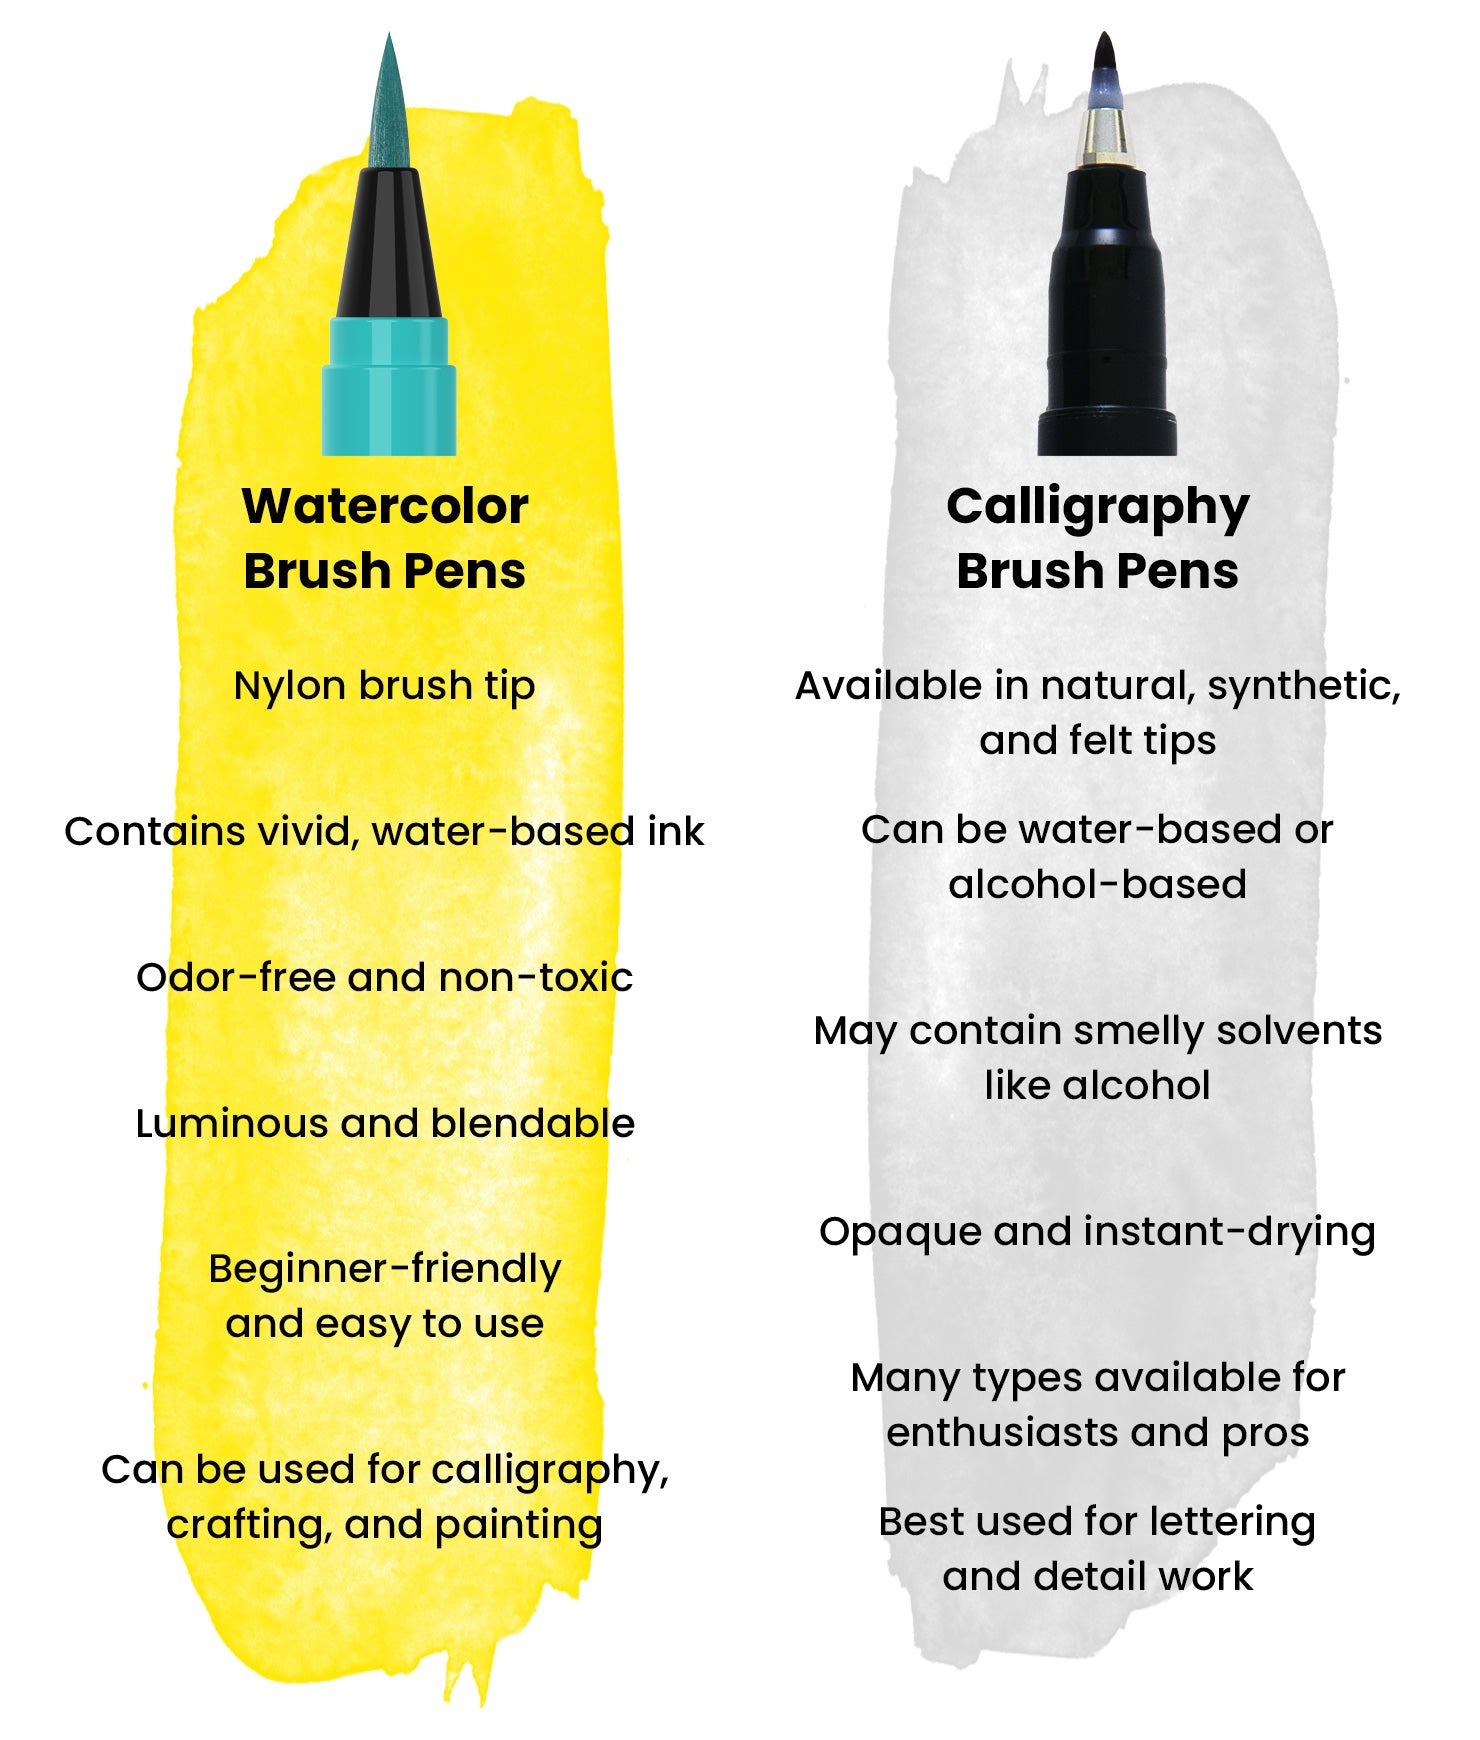 Watercolor Brush Pens vs Calligraphy Brush Pens